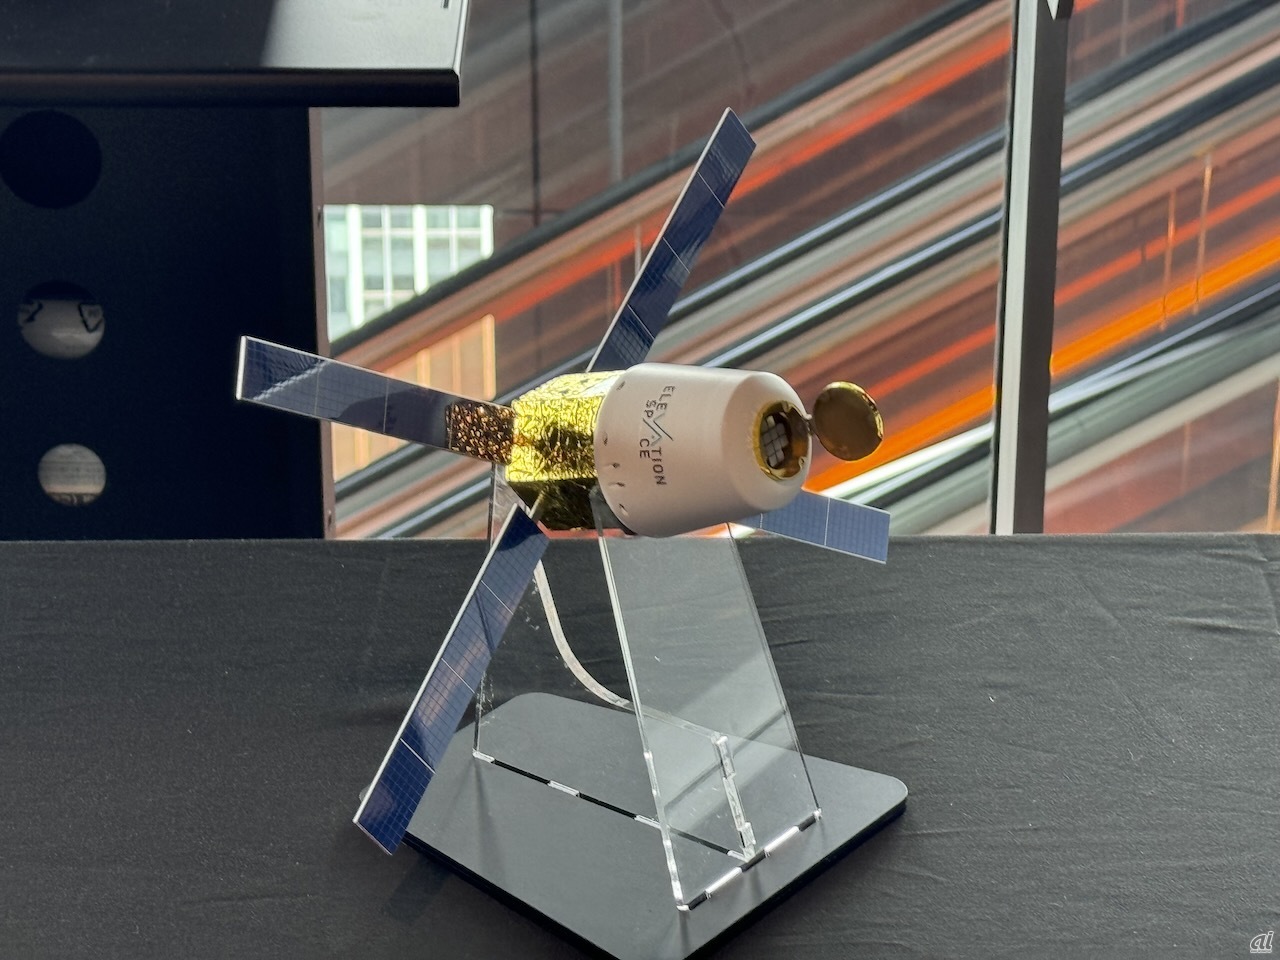 ElevationSpaceは独自の衛星を地球低軌道に打ち上げ、微小重力下での培養実験などを格安に実施できるサービスの立ち上げを目指している